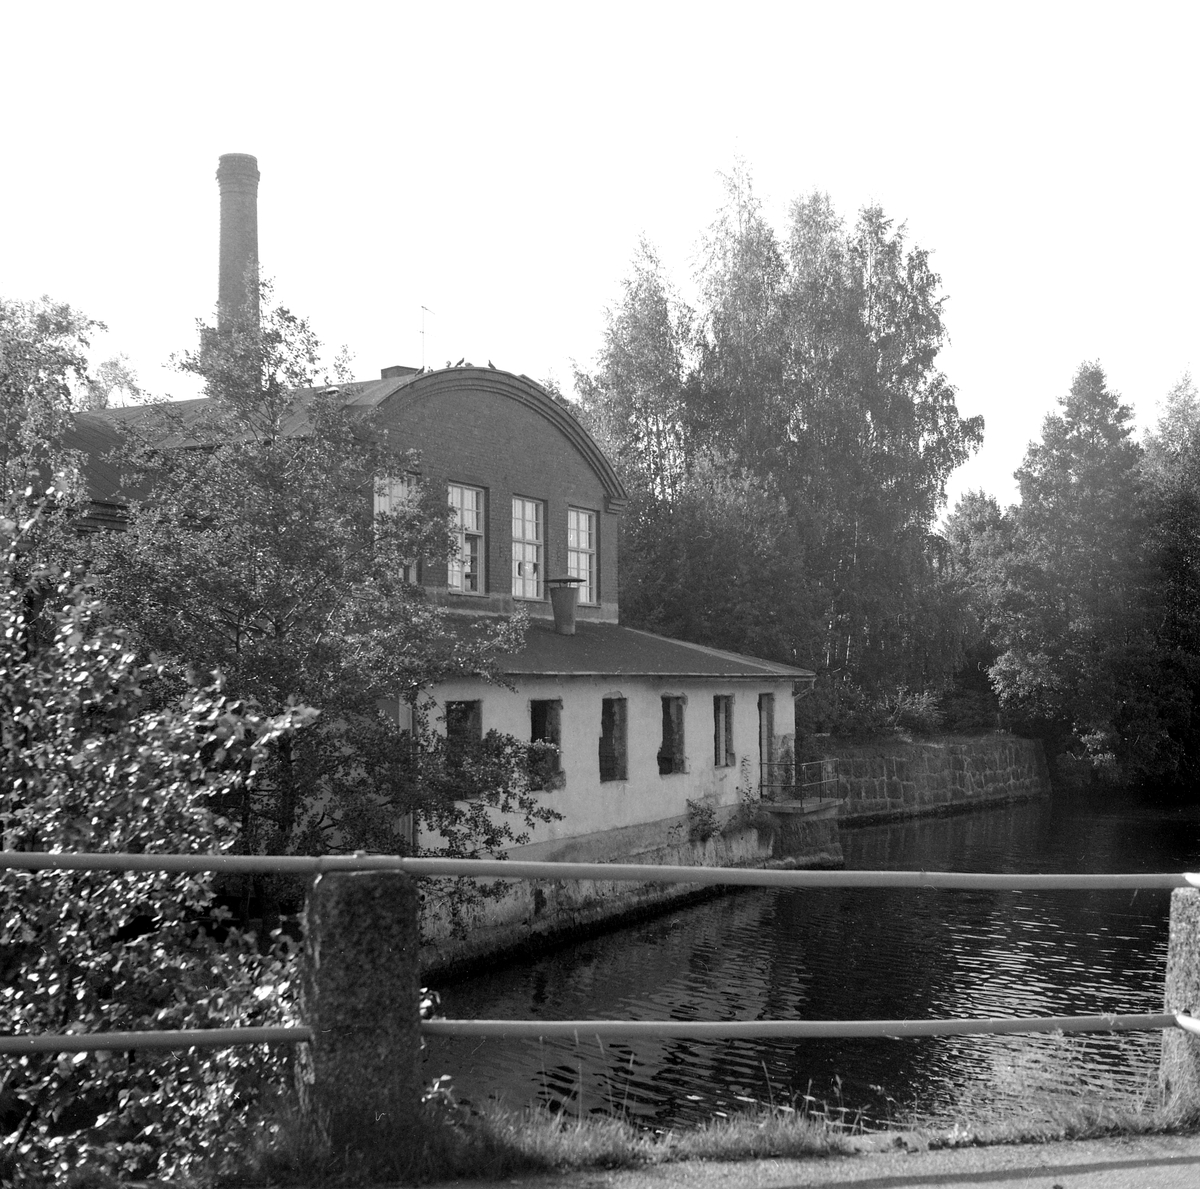 Hjulsbro AB:s fabrik invid Stångån i Hjulsbro. Verksamheten på platsen startade 1907 genom grundandet av Hjulsbro Tråddrageri- och Spikfabrik. Från 1923 ägdes fabriken av den kände bankdirektören Jonn O. Nilsson i Linköping och med honom kom verksamheten åter på fötter efter en svår period under  krigsåren och följande depression. Fabriksbyggnaden på bilden uppfördes på platsen för en äldre som blivit lågornas rov 1930. Från 1964 ägdes företaget av Halmstad Järnverk, i folkmun Hamstadstål. Här dokumenterad av Östergötlands museum inför rivning.